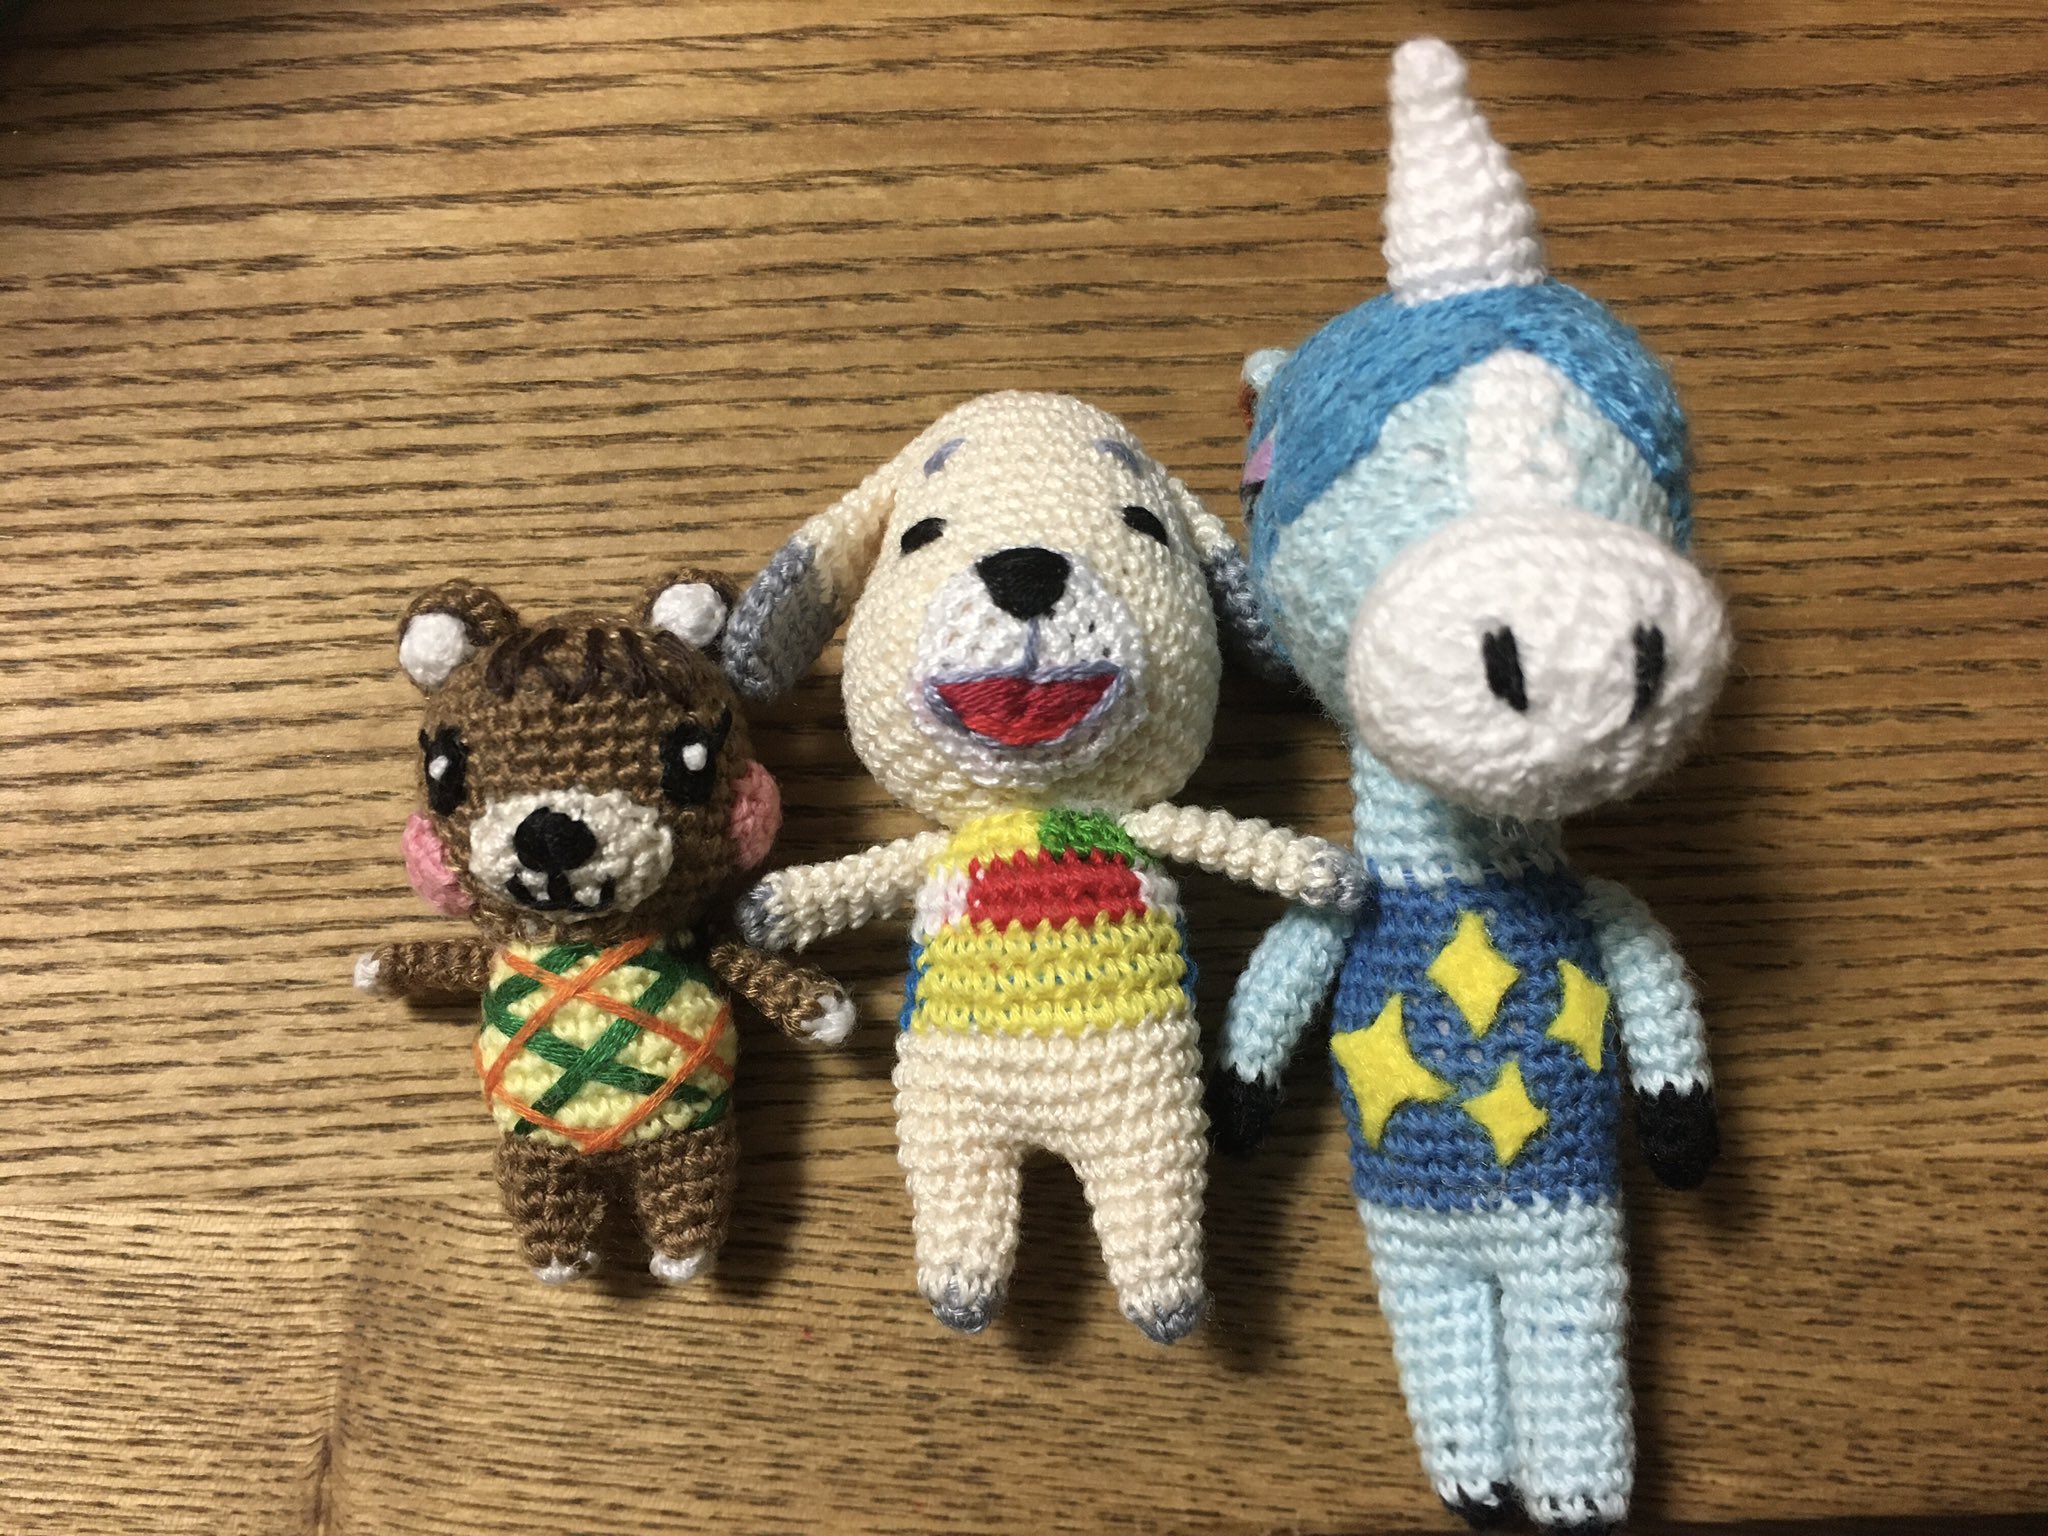 ゆき かぎ針編み講師 あつ森のキャラクターを編みました 今日発送したので近いうちにお届けできると思います 左からメープル バニラ ジュリー あつ森 あみぐるみ 編み物部 T Co Wu91ftl2vm Twitter